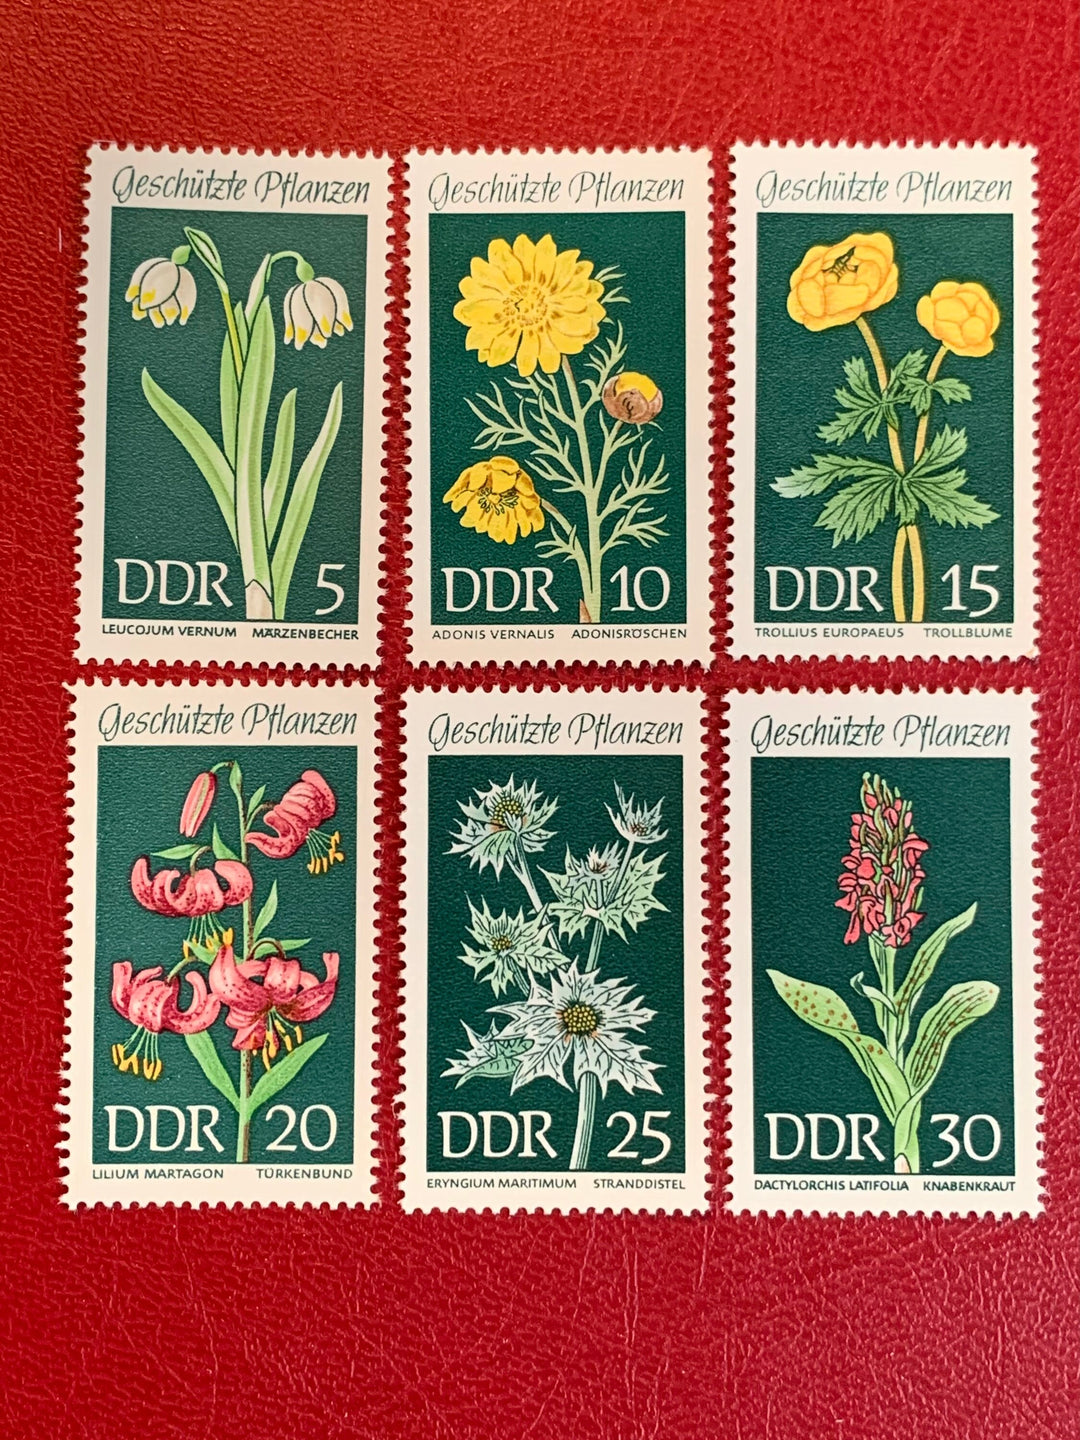 Germany (DDR) - Original Vintage Postage Stamps- 1969 Flowers